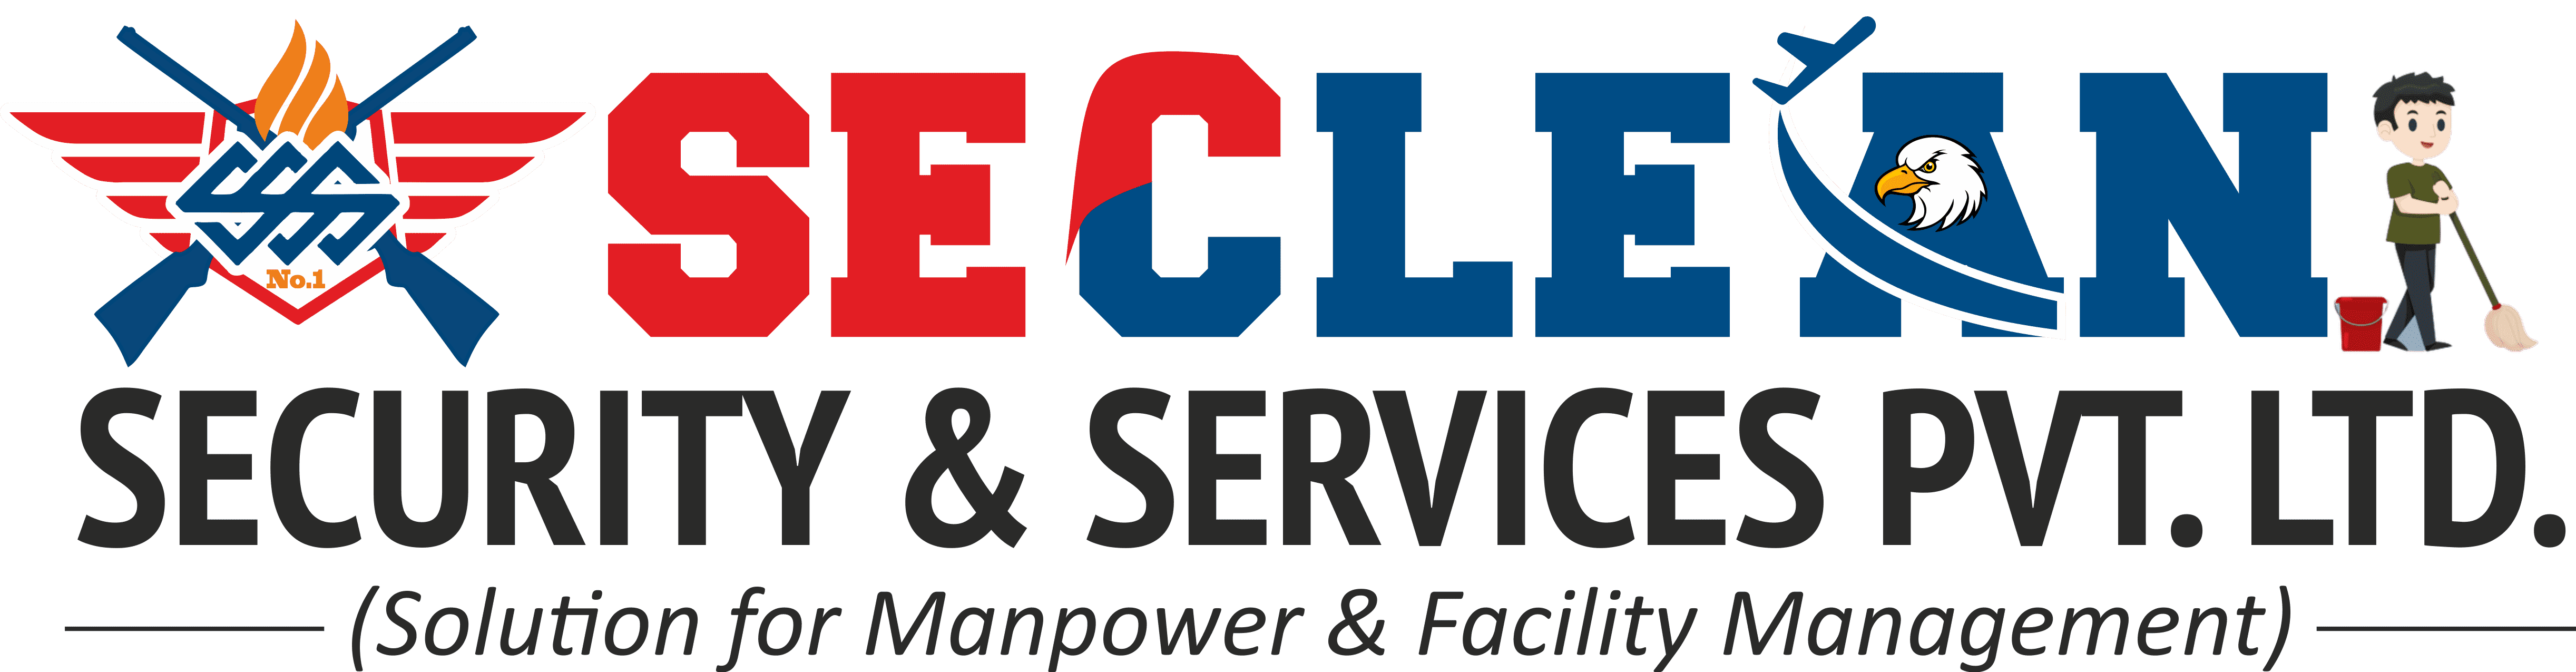 Seclean Services Pvt. Ltd.